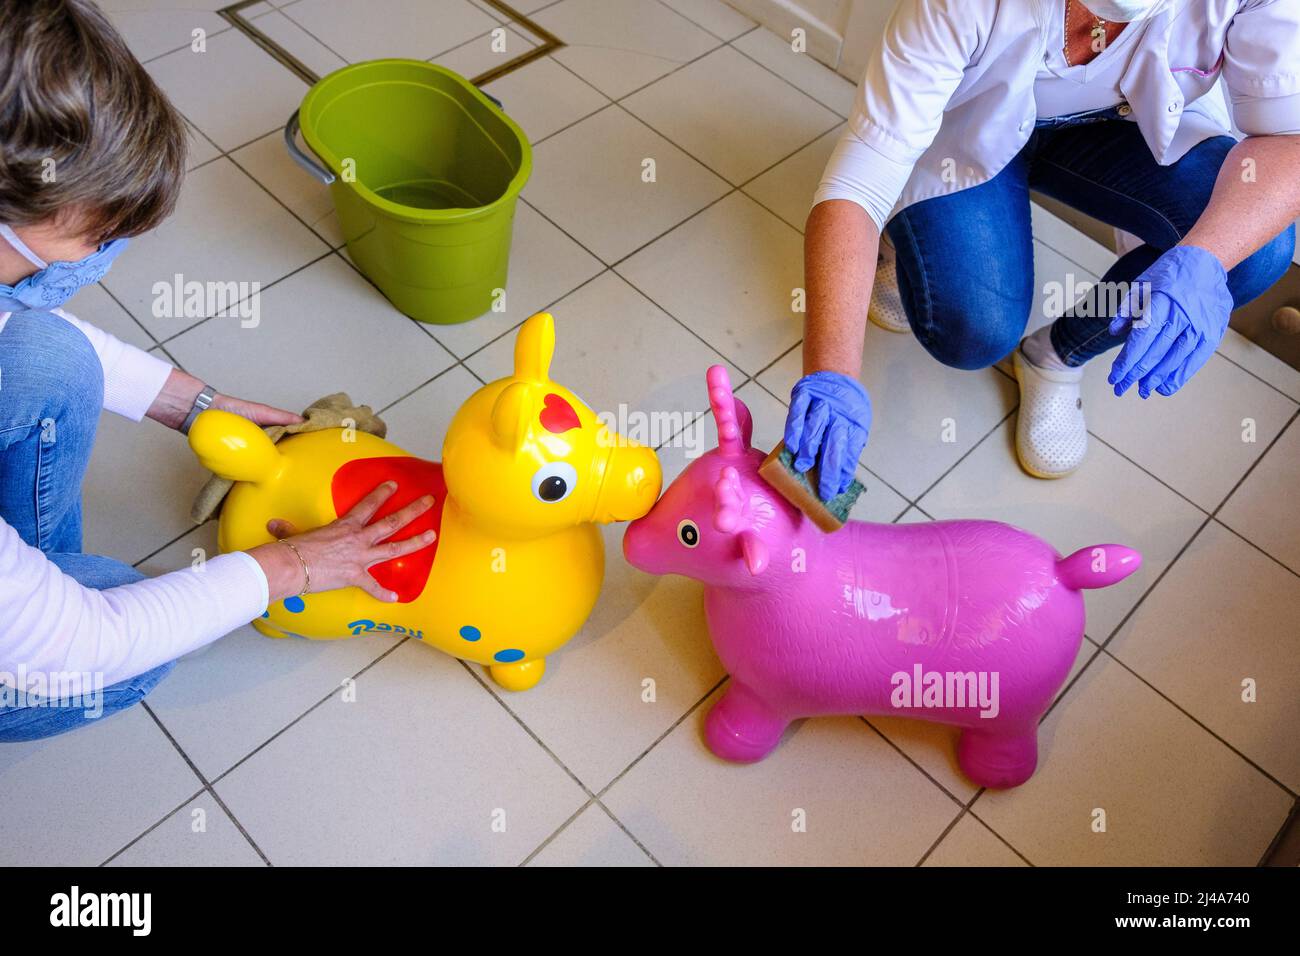 Decontamination et desinfection des jouets des enfants dans une garderie |  Toys Decontamination and desinfection in a child care settings. Stock Photo